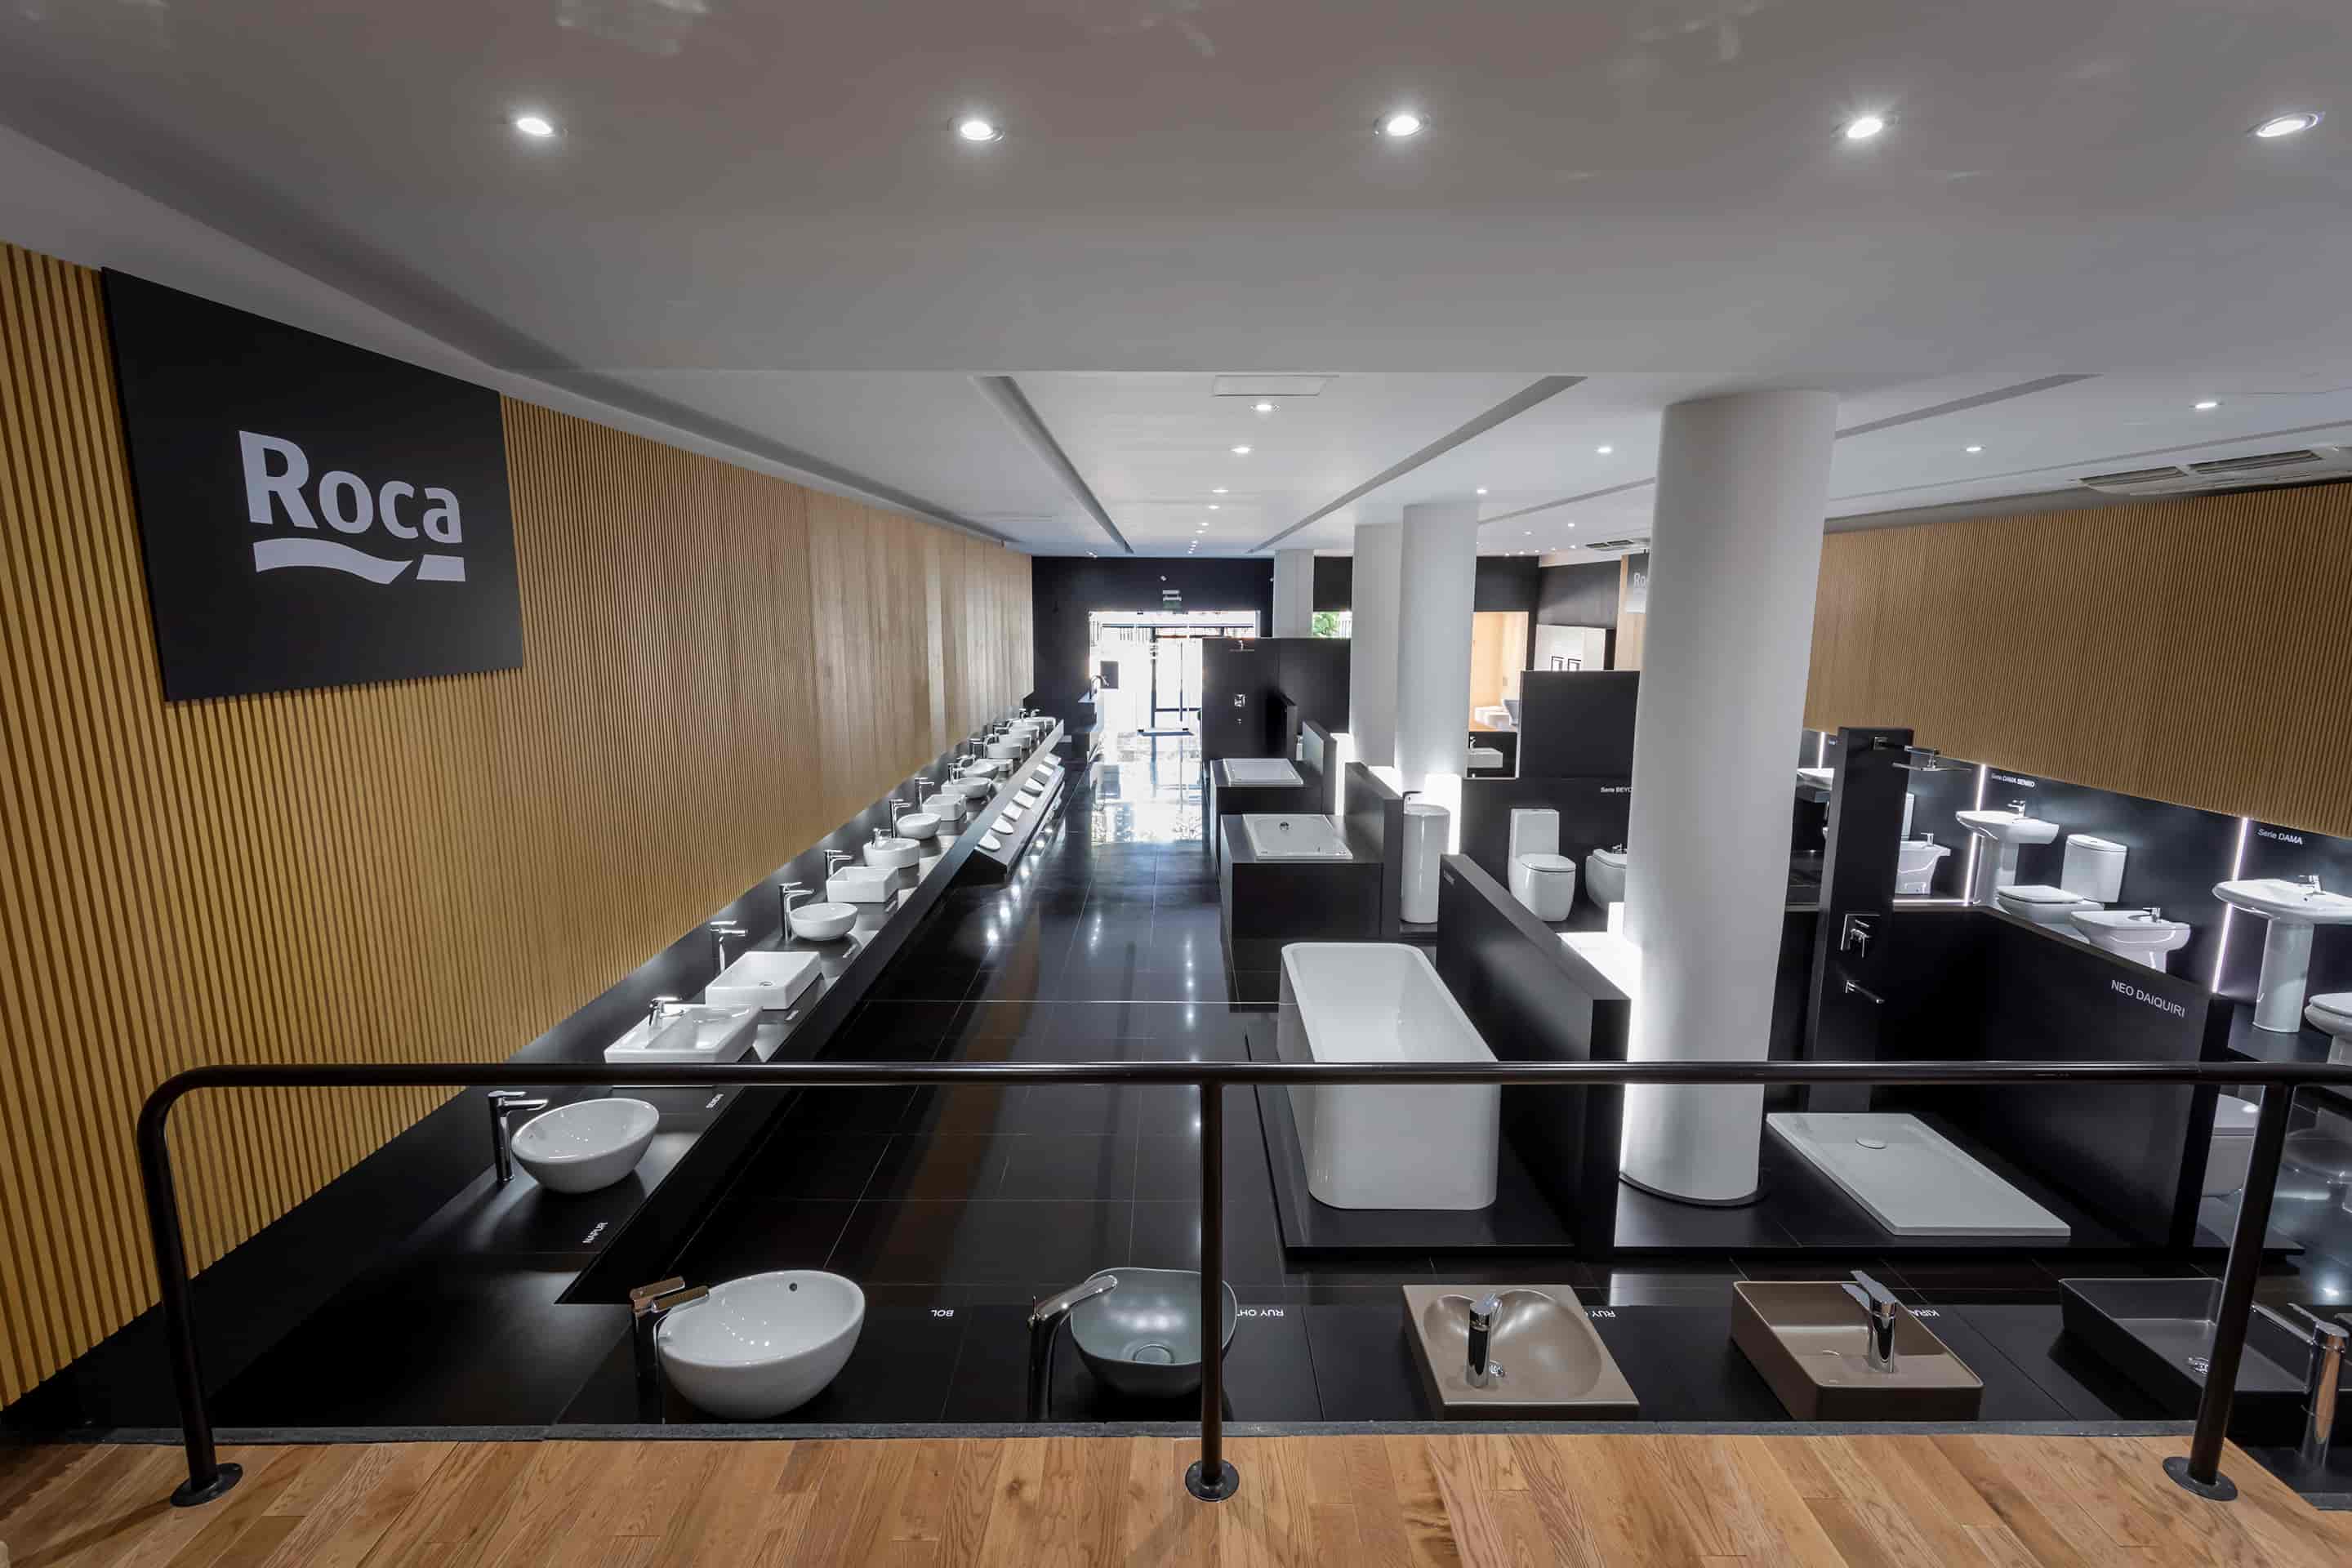 <p>Roca sa stala prvým výrobcom kúpeľňového vybavenia, ktorý otvoril showroom v meste Buenos Aires.</p>2